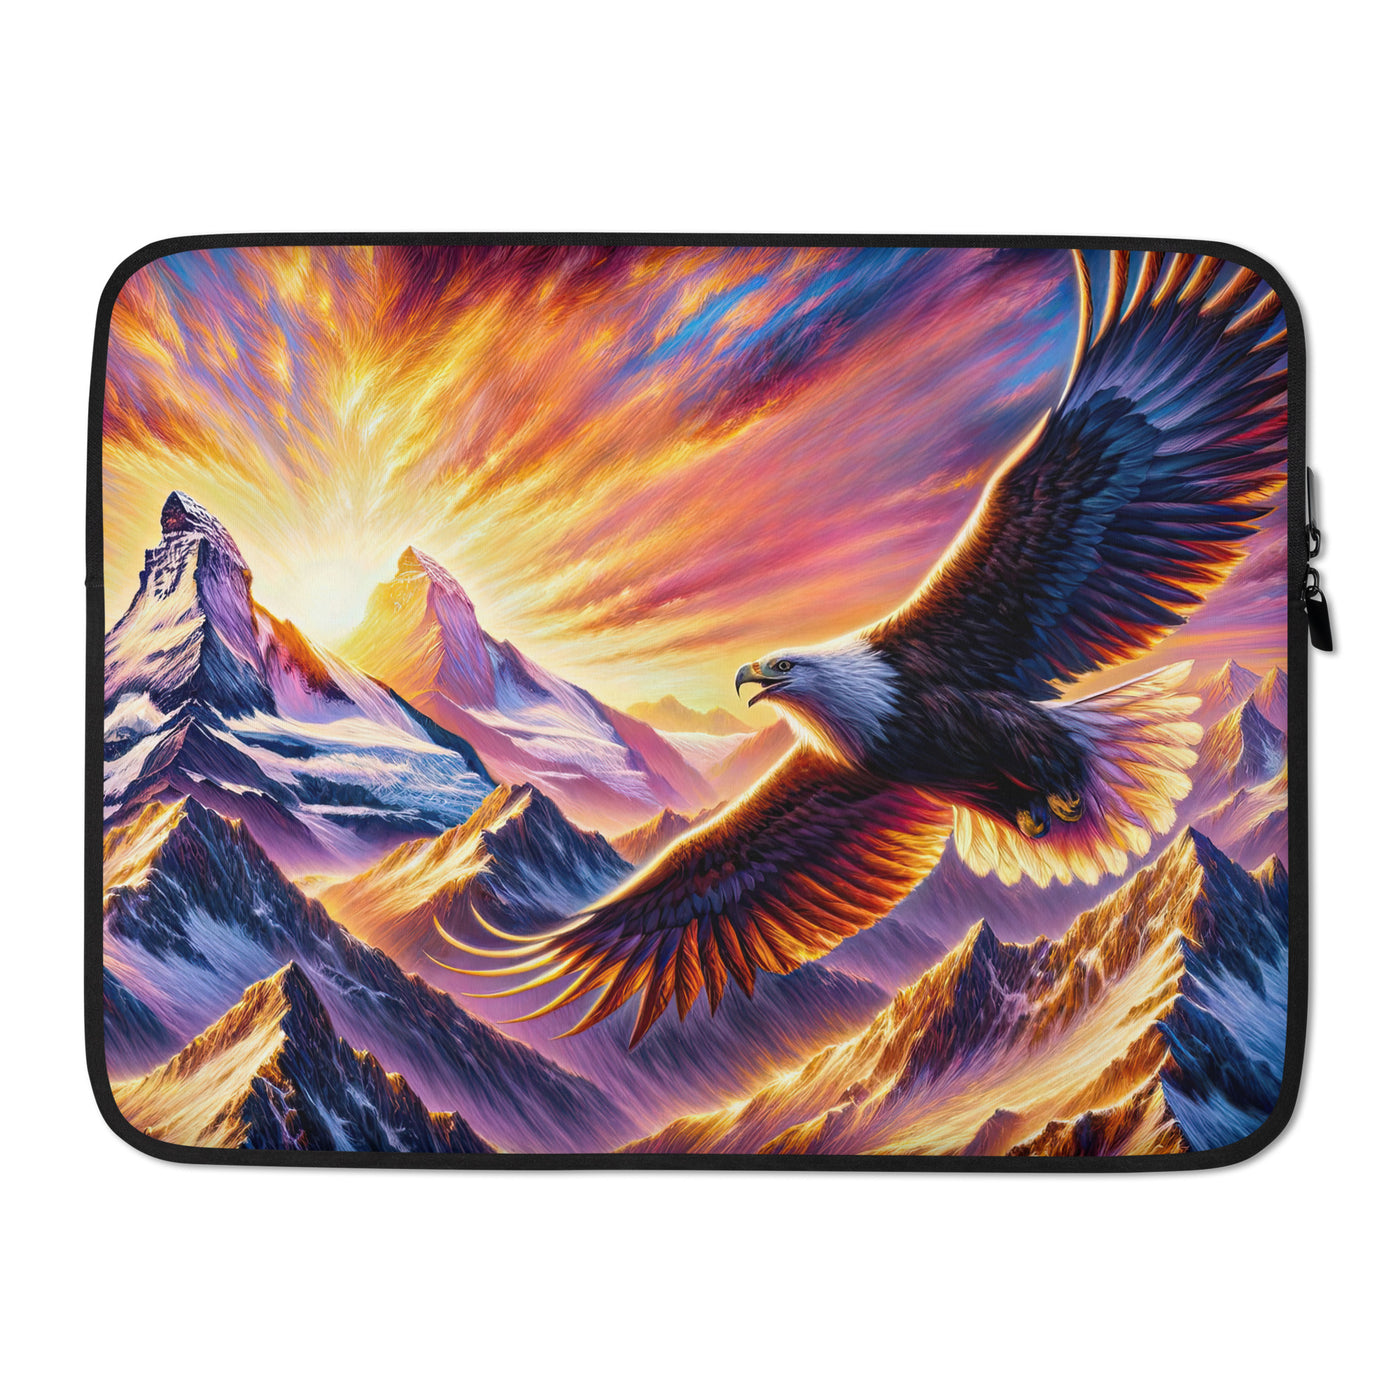 Ölgemälde eines Adlers im Sonnenaufgang der Alpen, gold-rosa beleuchtete Gipfel - Laptophülle berge xxx yyy zzz 15″